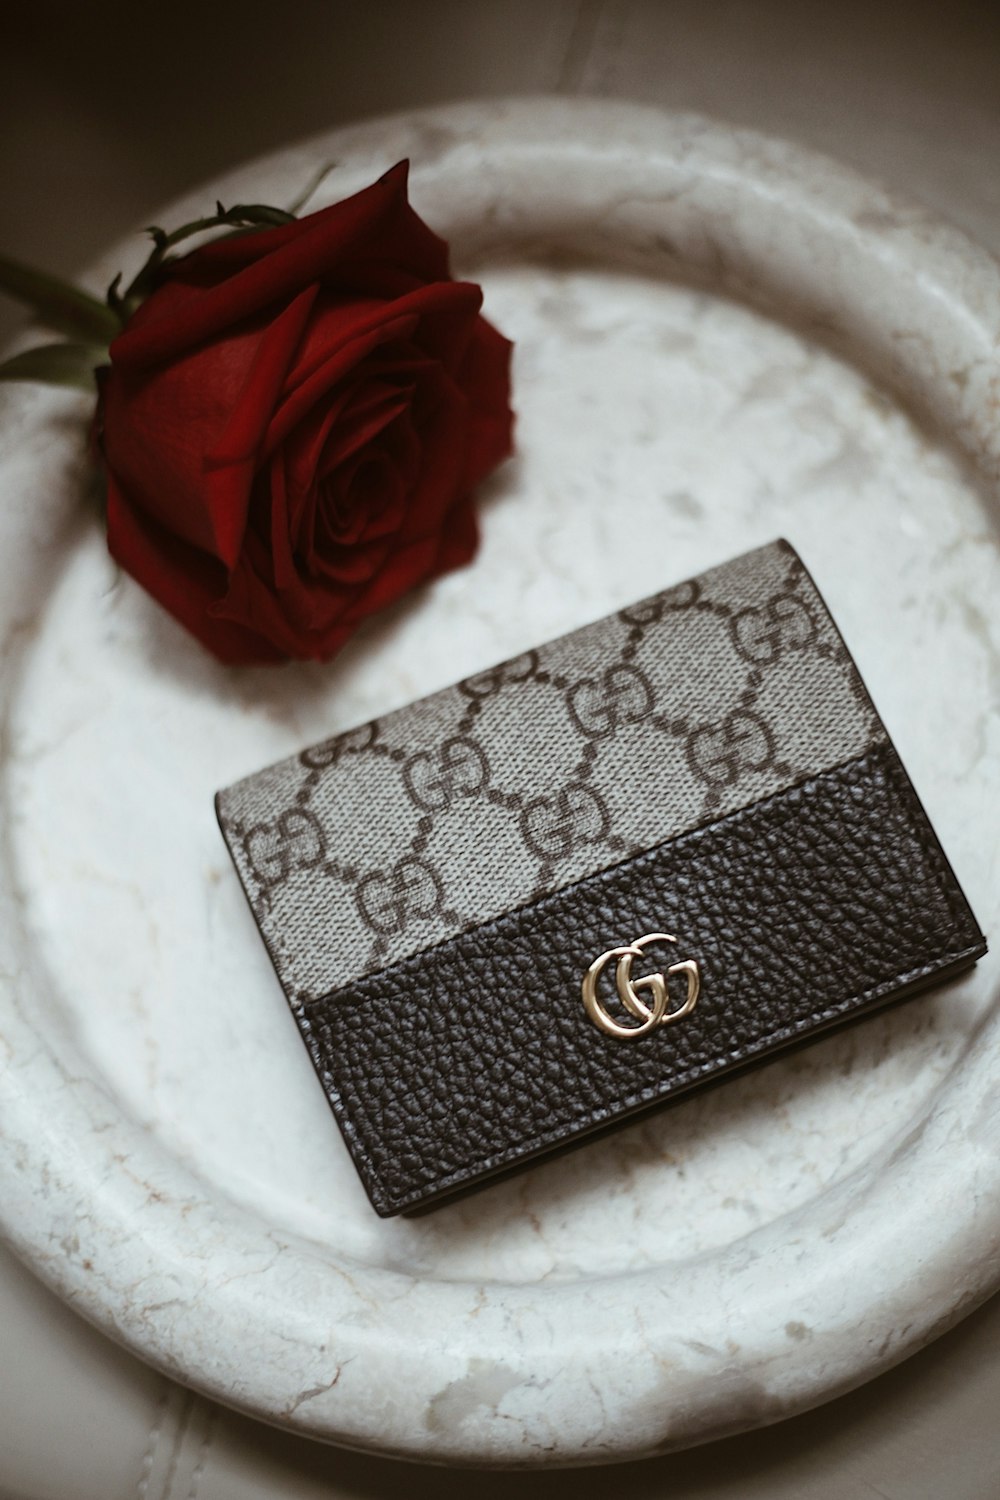 a rose in a purse